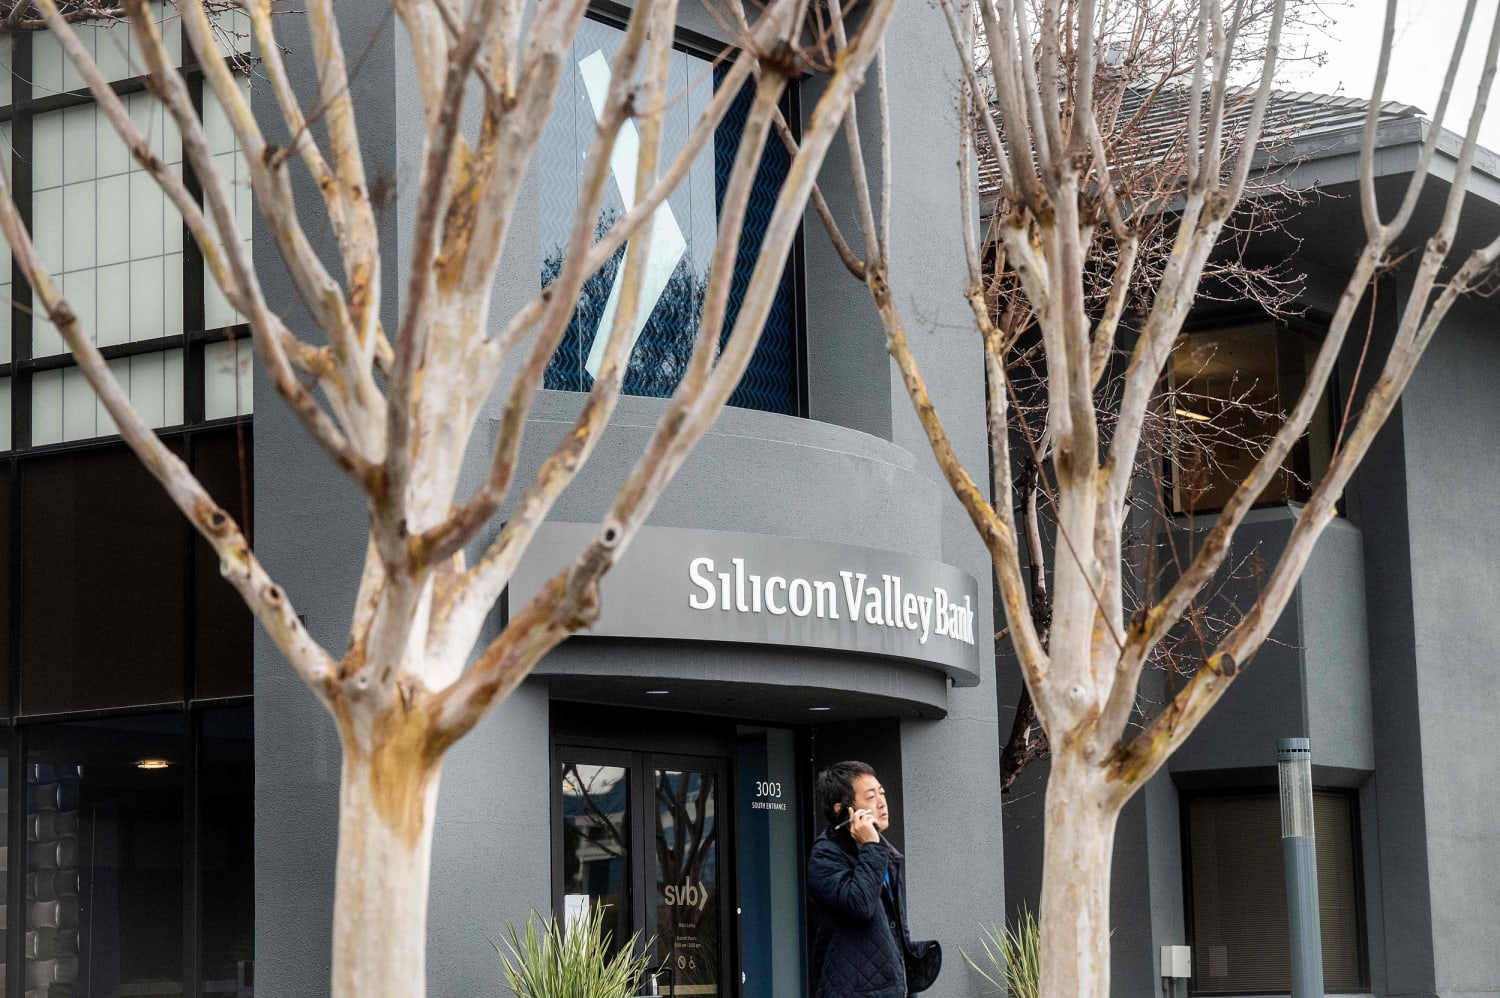 Etsy stelt betalingen aan verkopers uit vanwege de ineenstorting van de Silicon Valley-bank